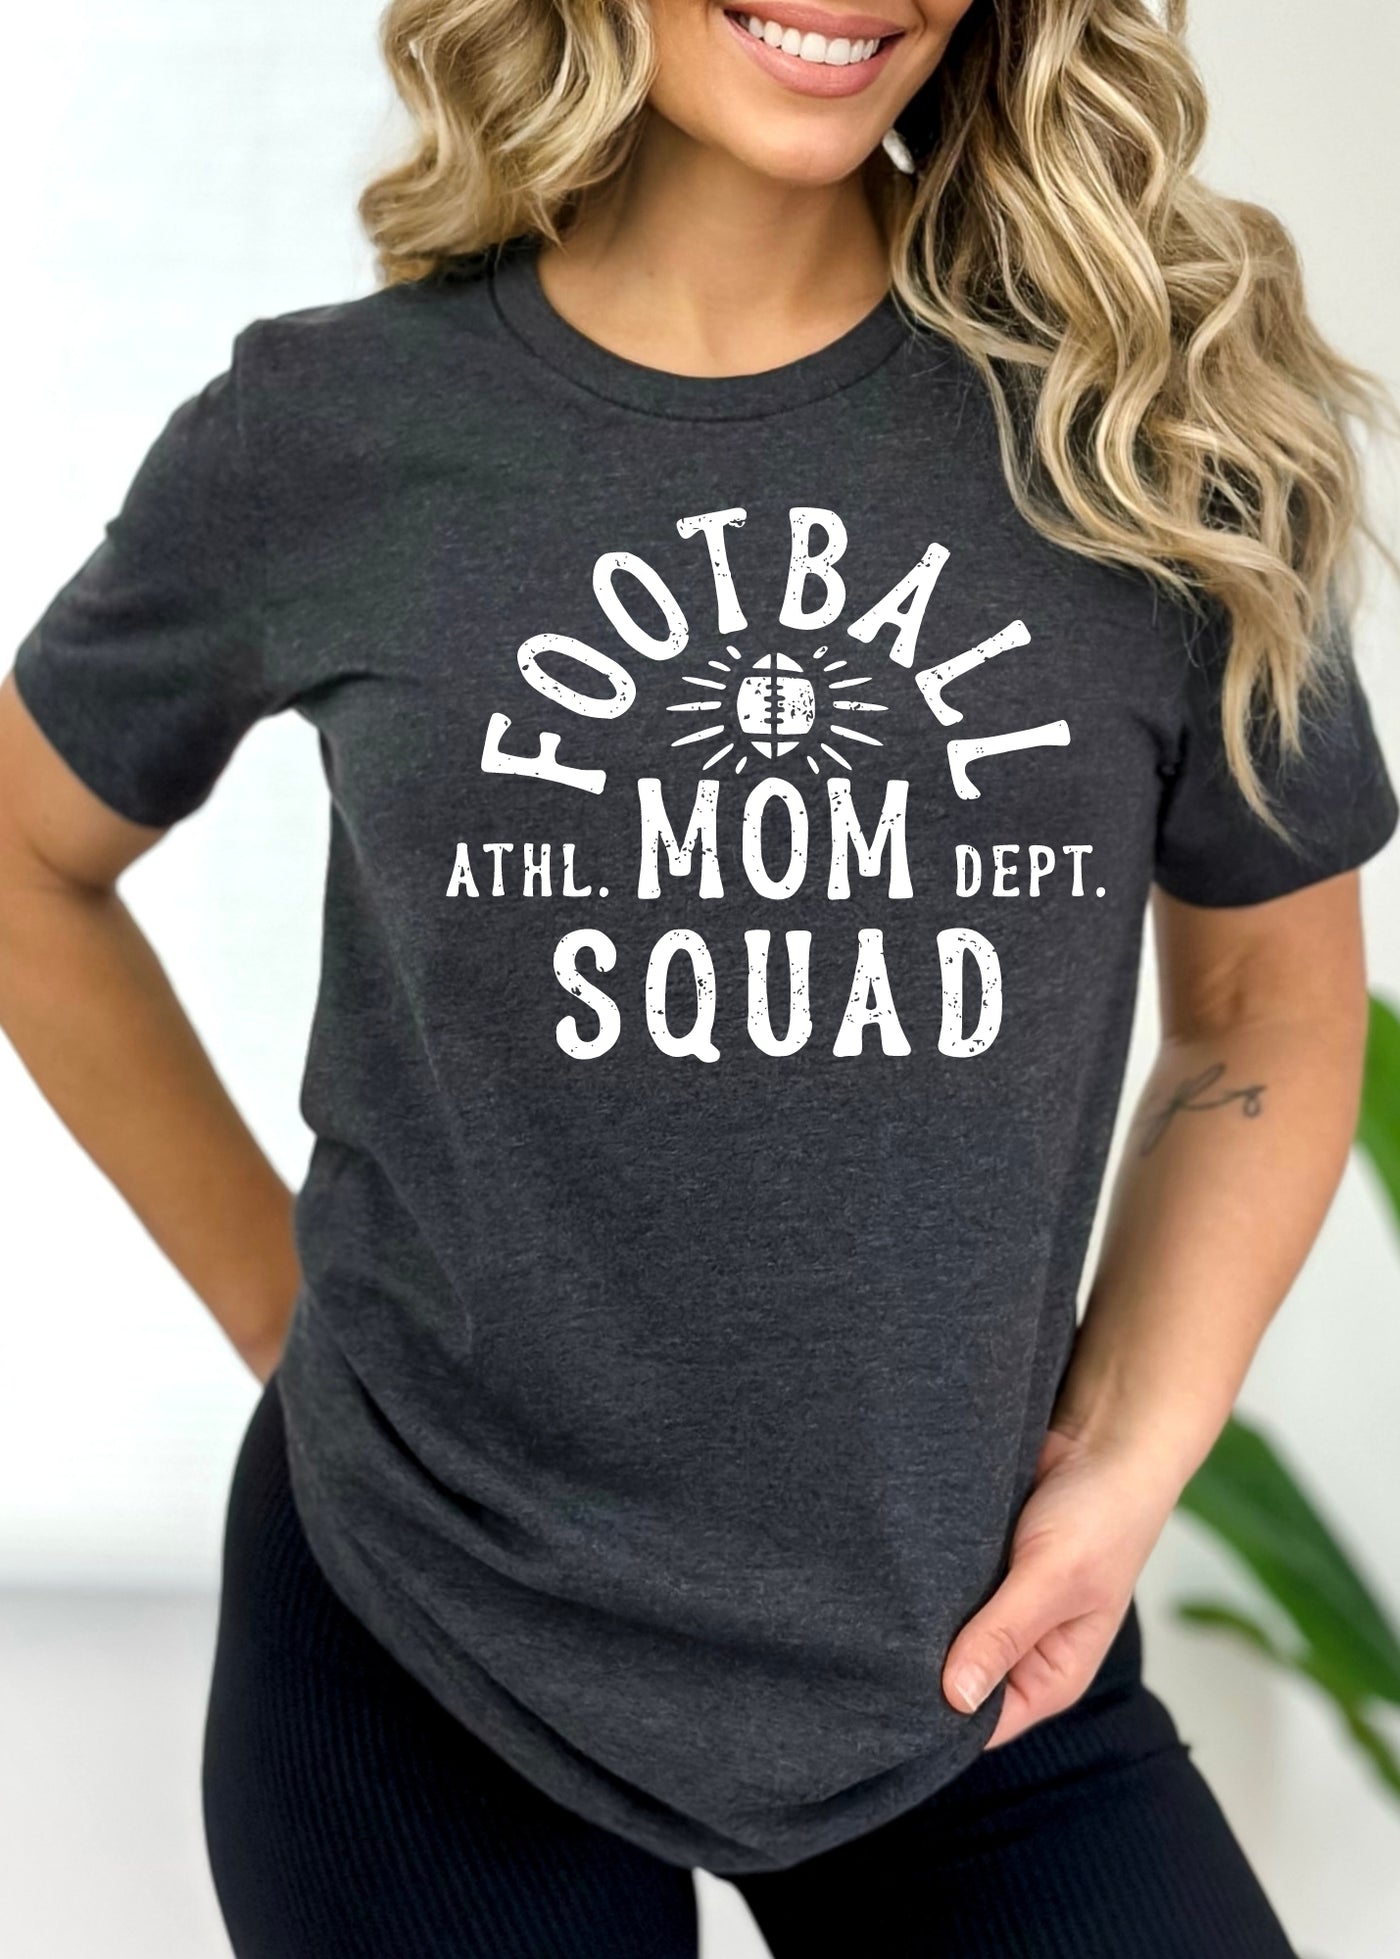 Football mom squad